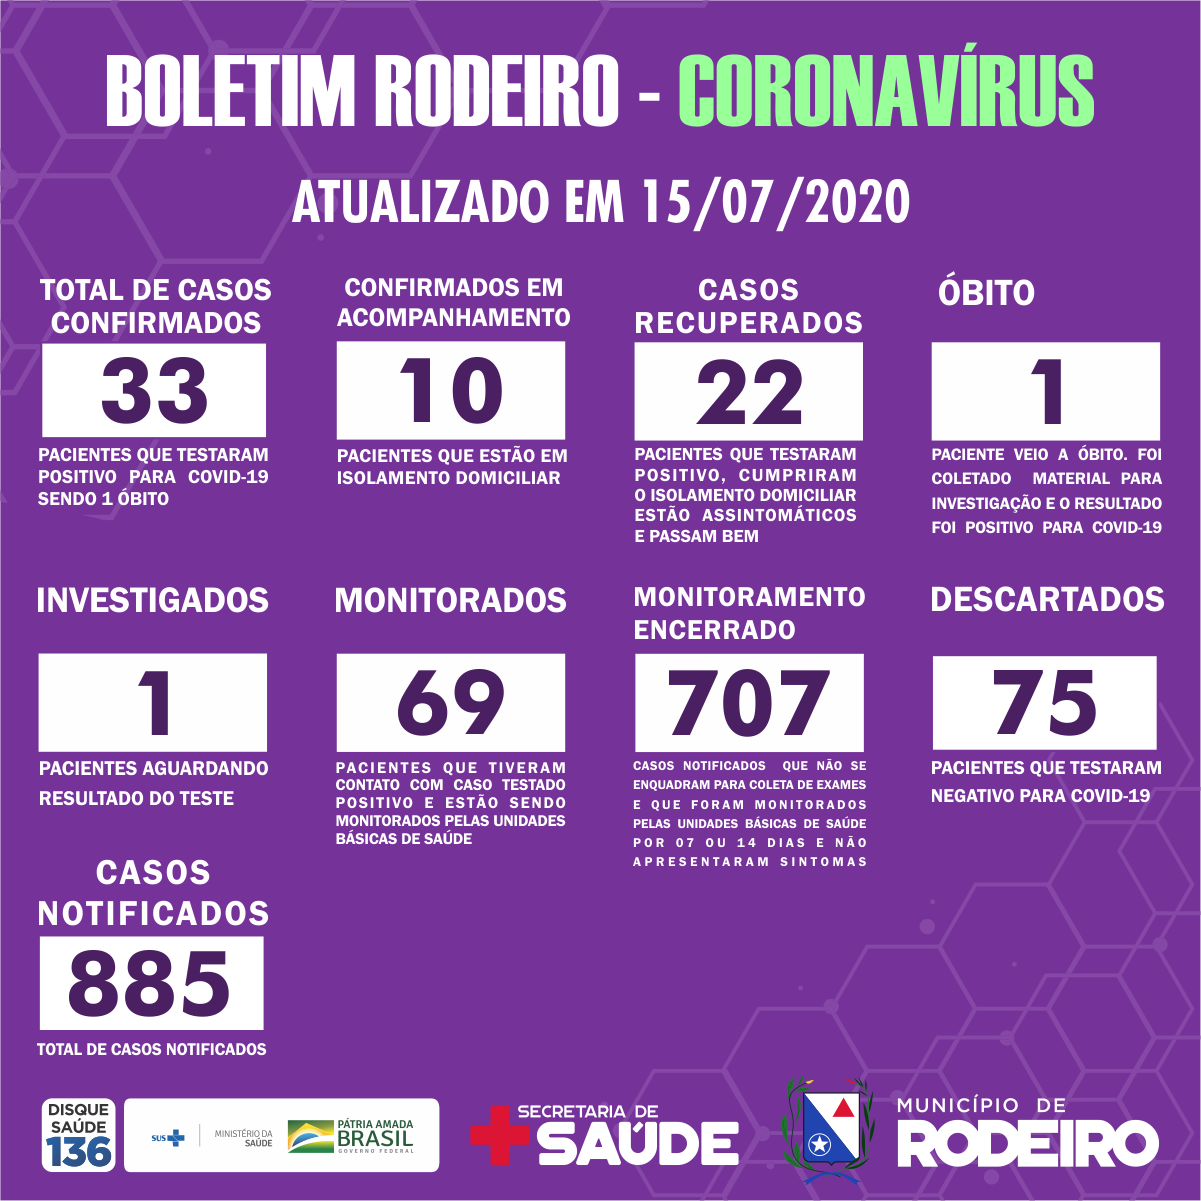 Boletim epidemiológico do Município de Rodeiro coronavírus, atualizado em 15/07/2020